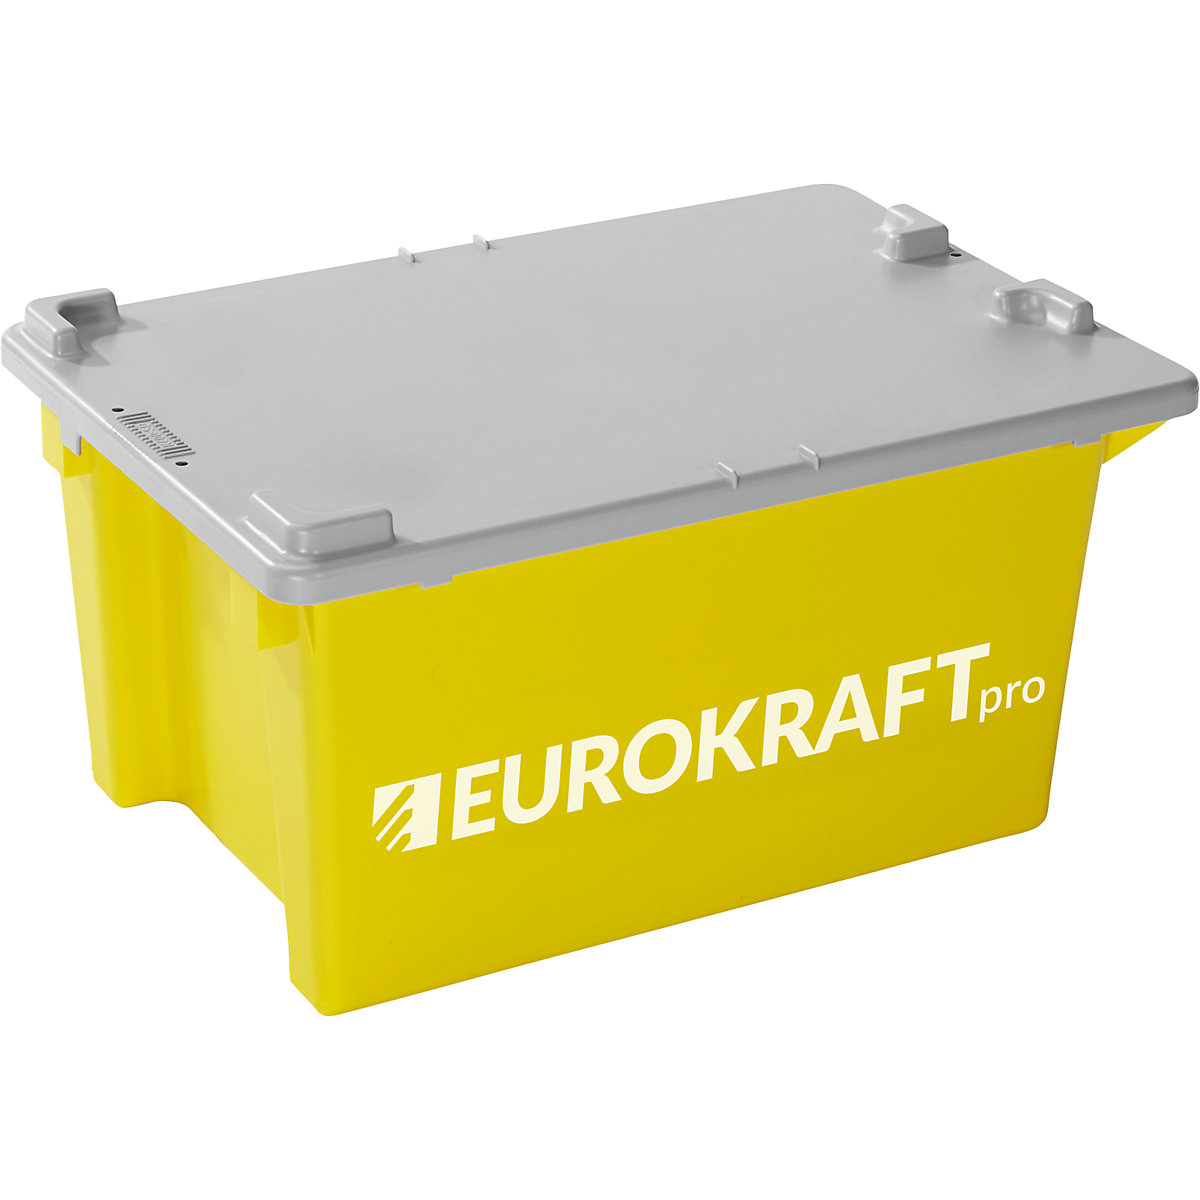 Recipiente empilhável giratório – eurokraft pro (Imagem do produto 3)